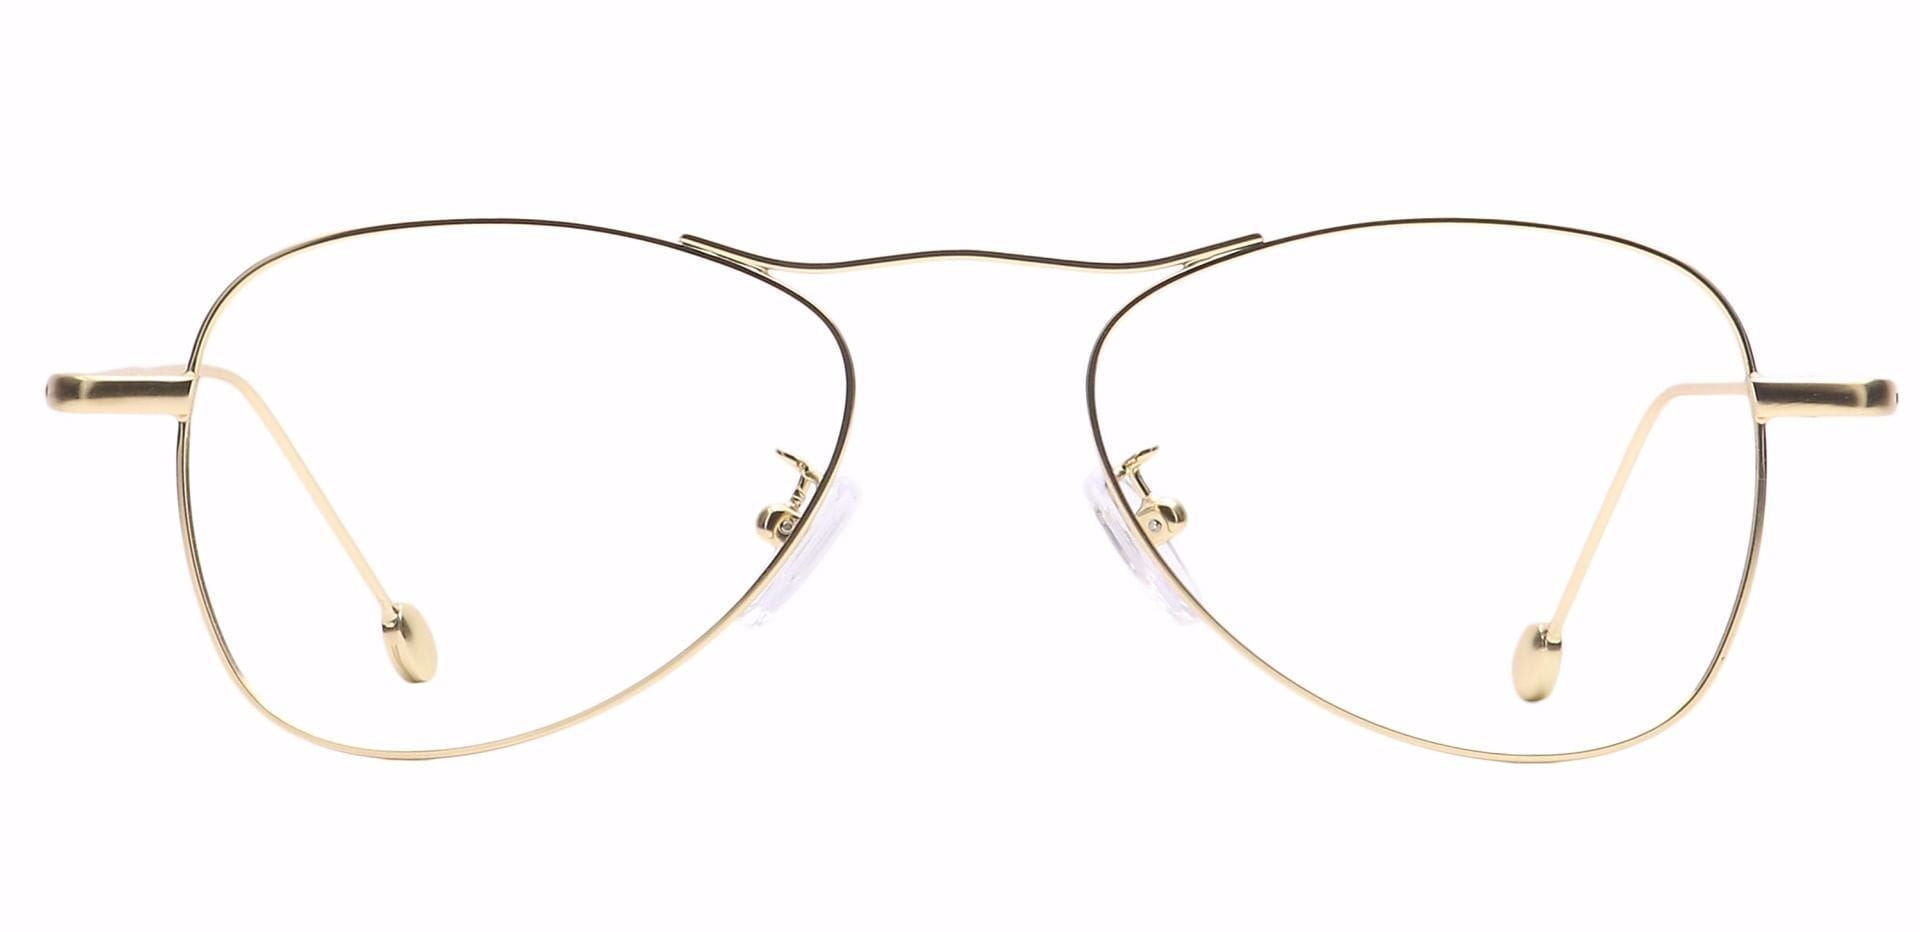 Brio Aviator Prescription Glasses - Gold